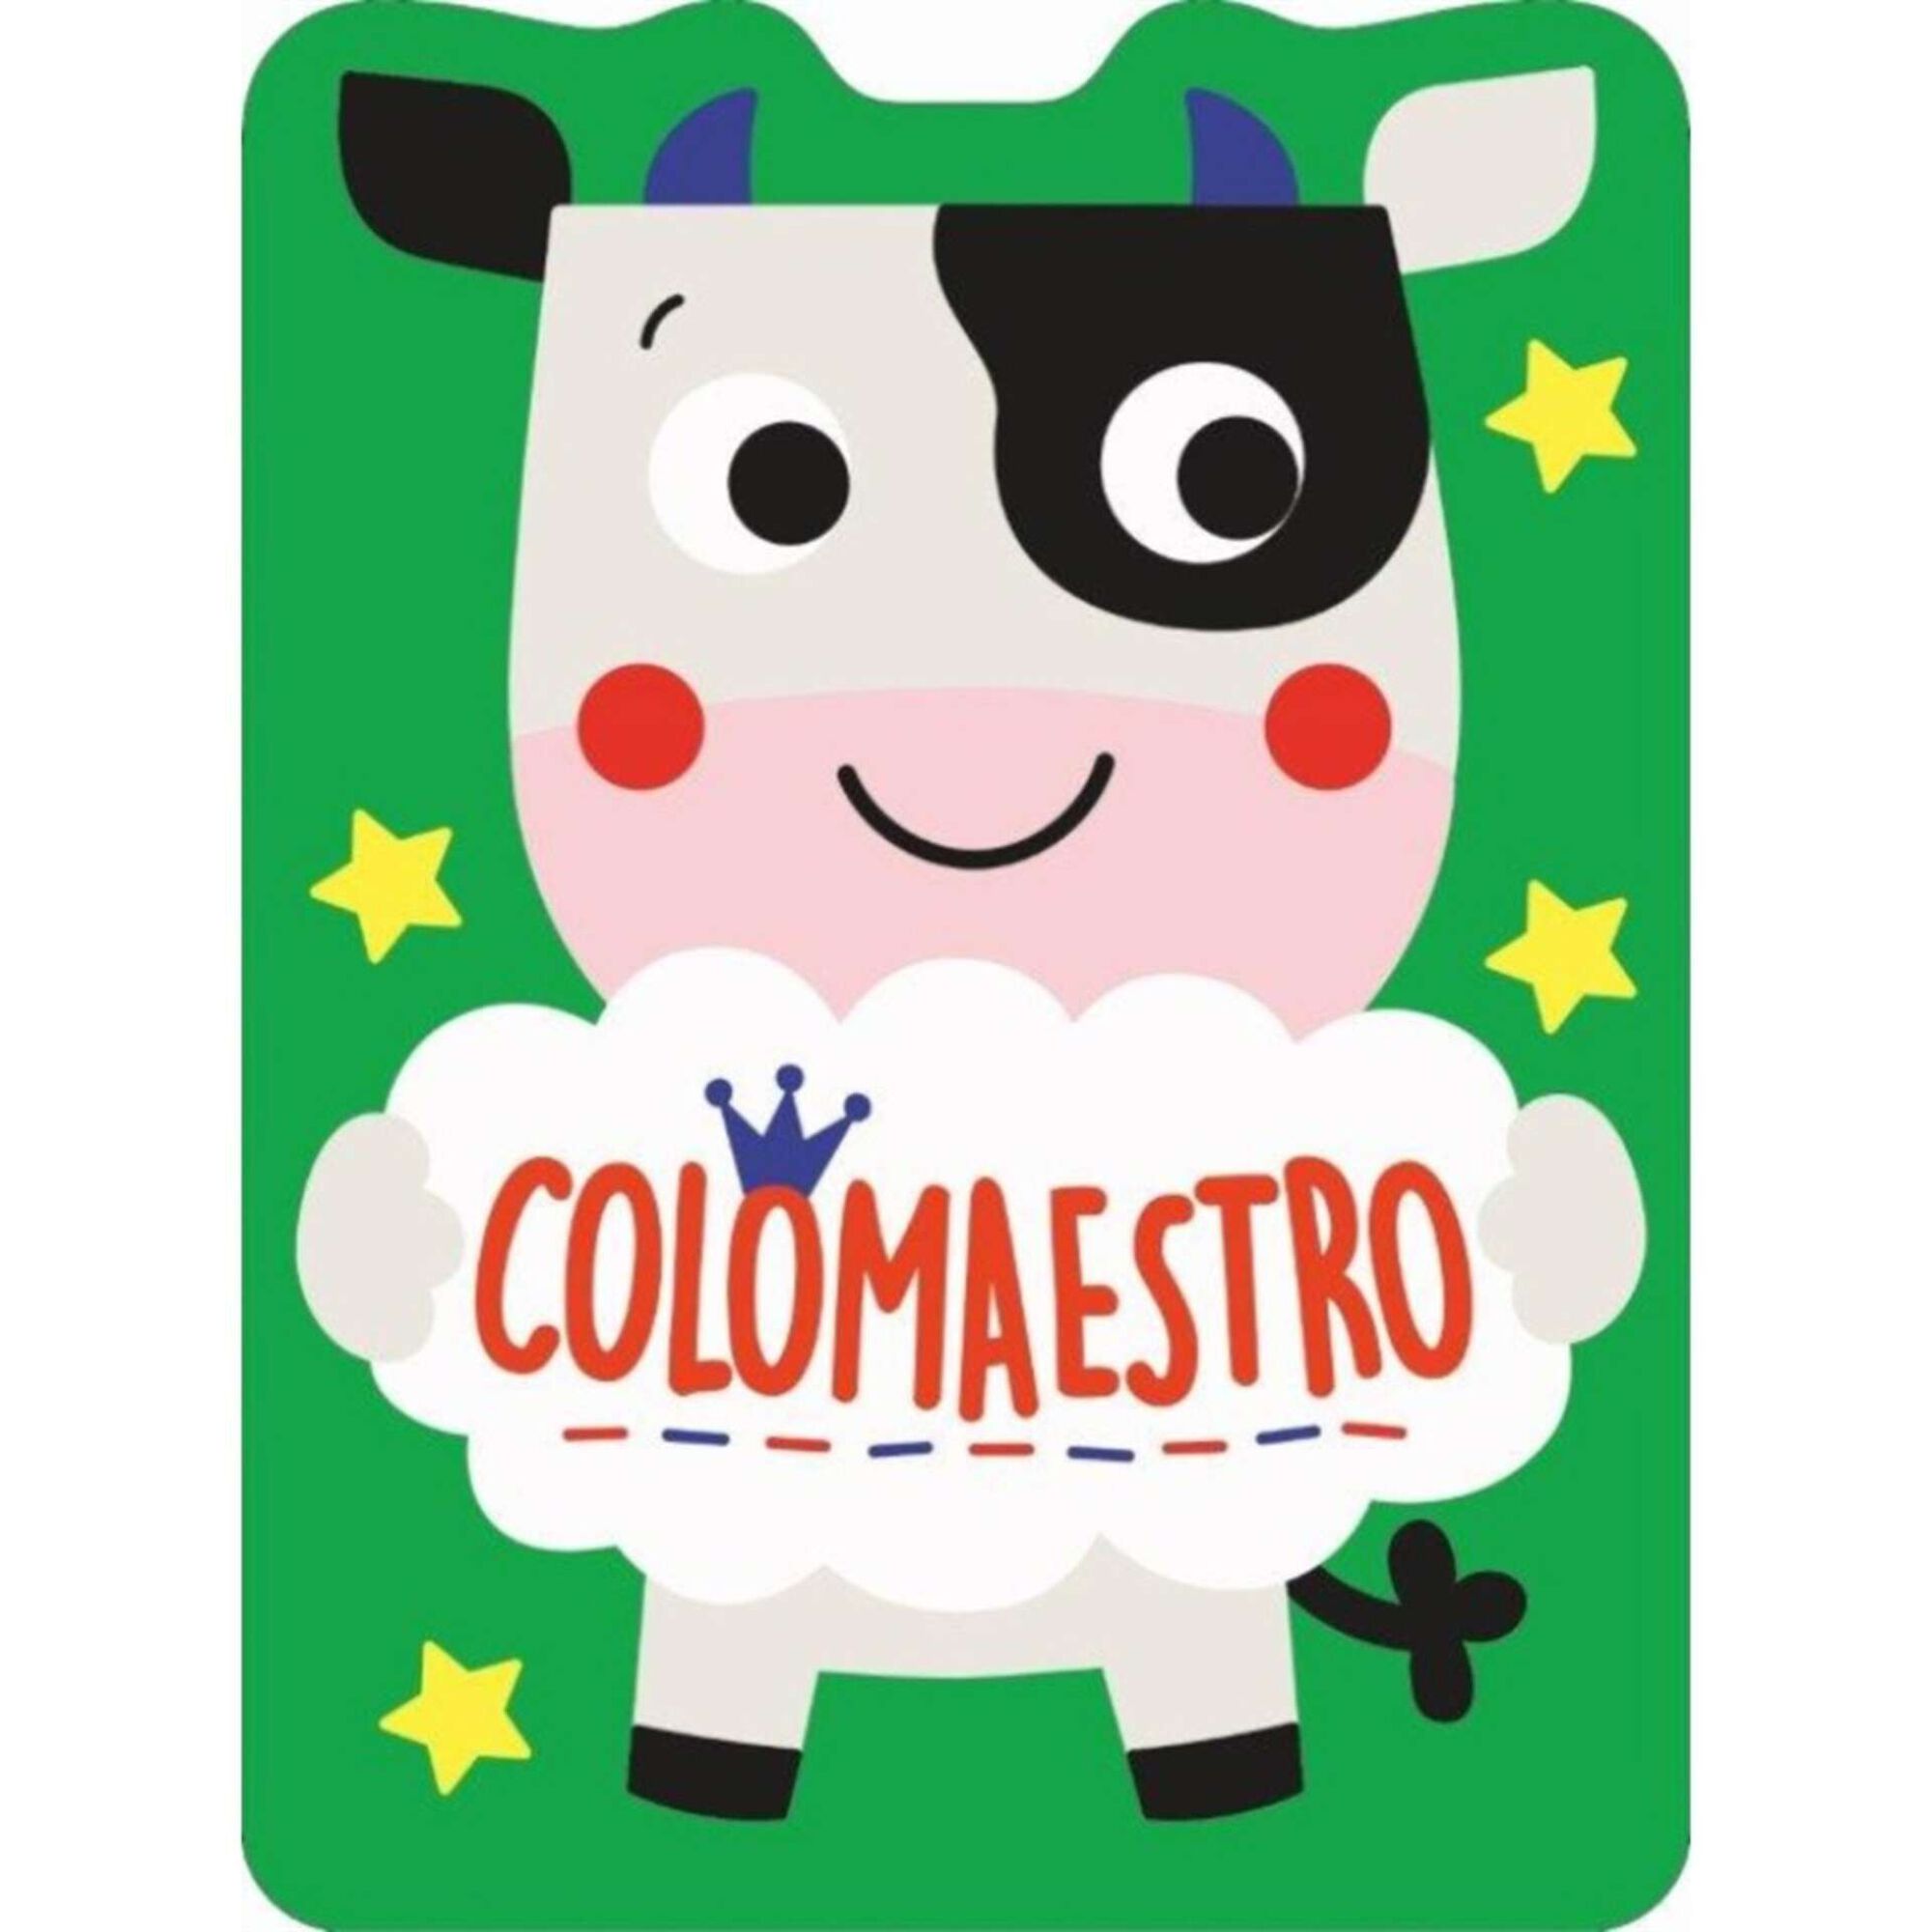 Colomaestro - Vaca